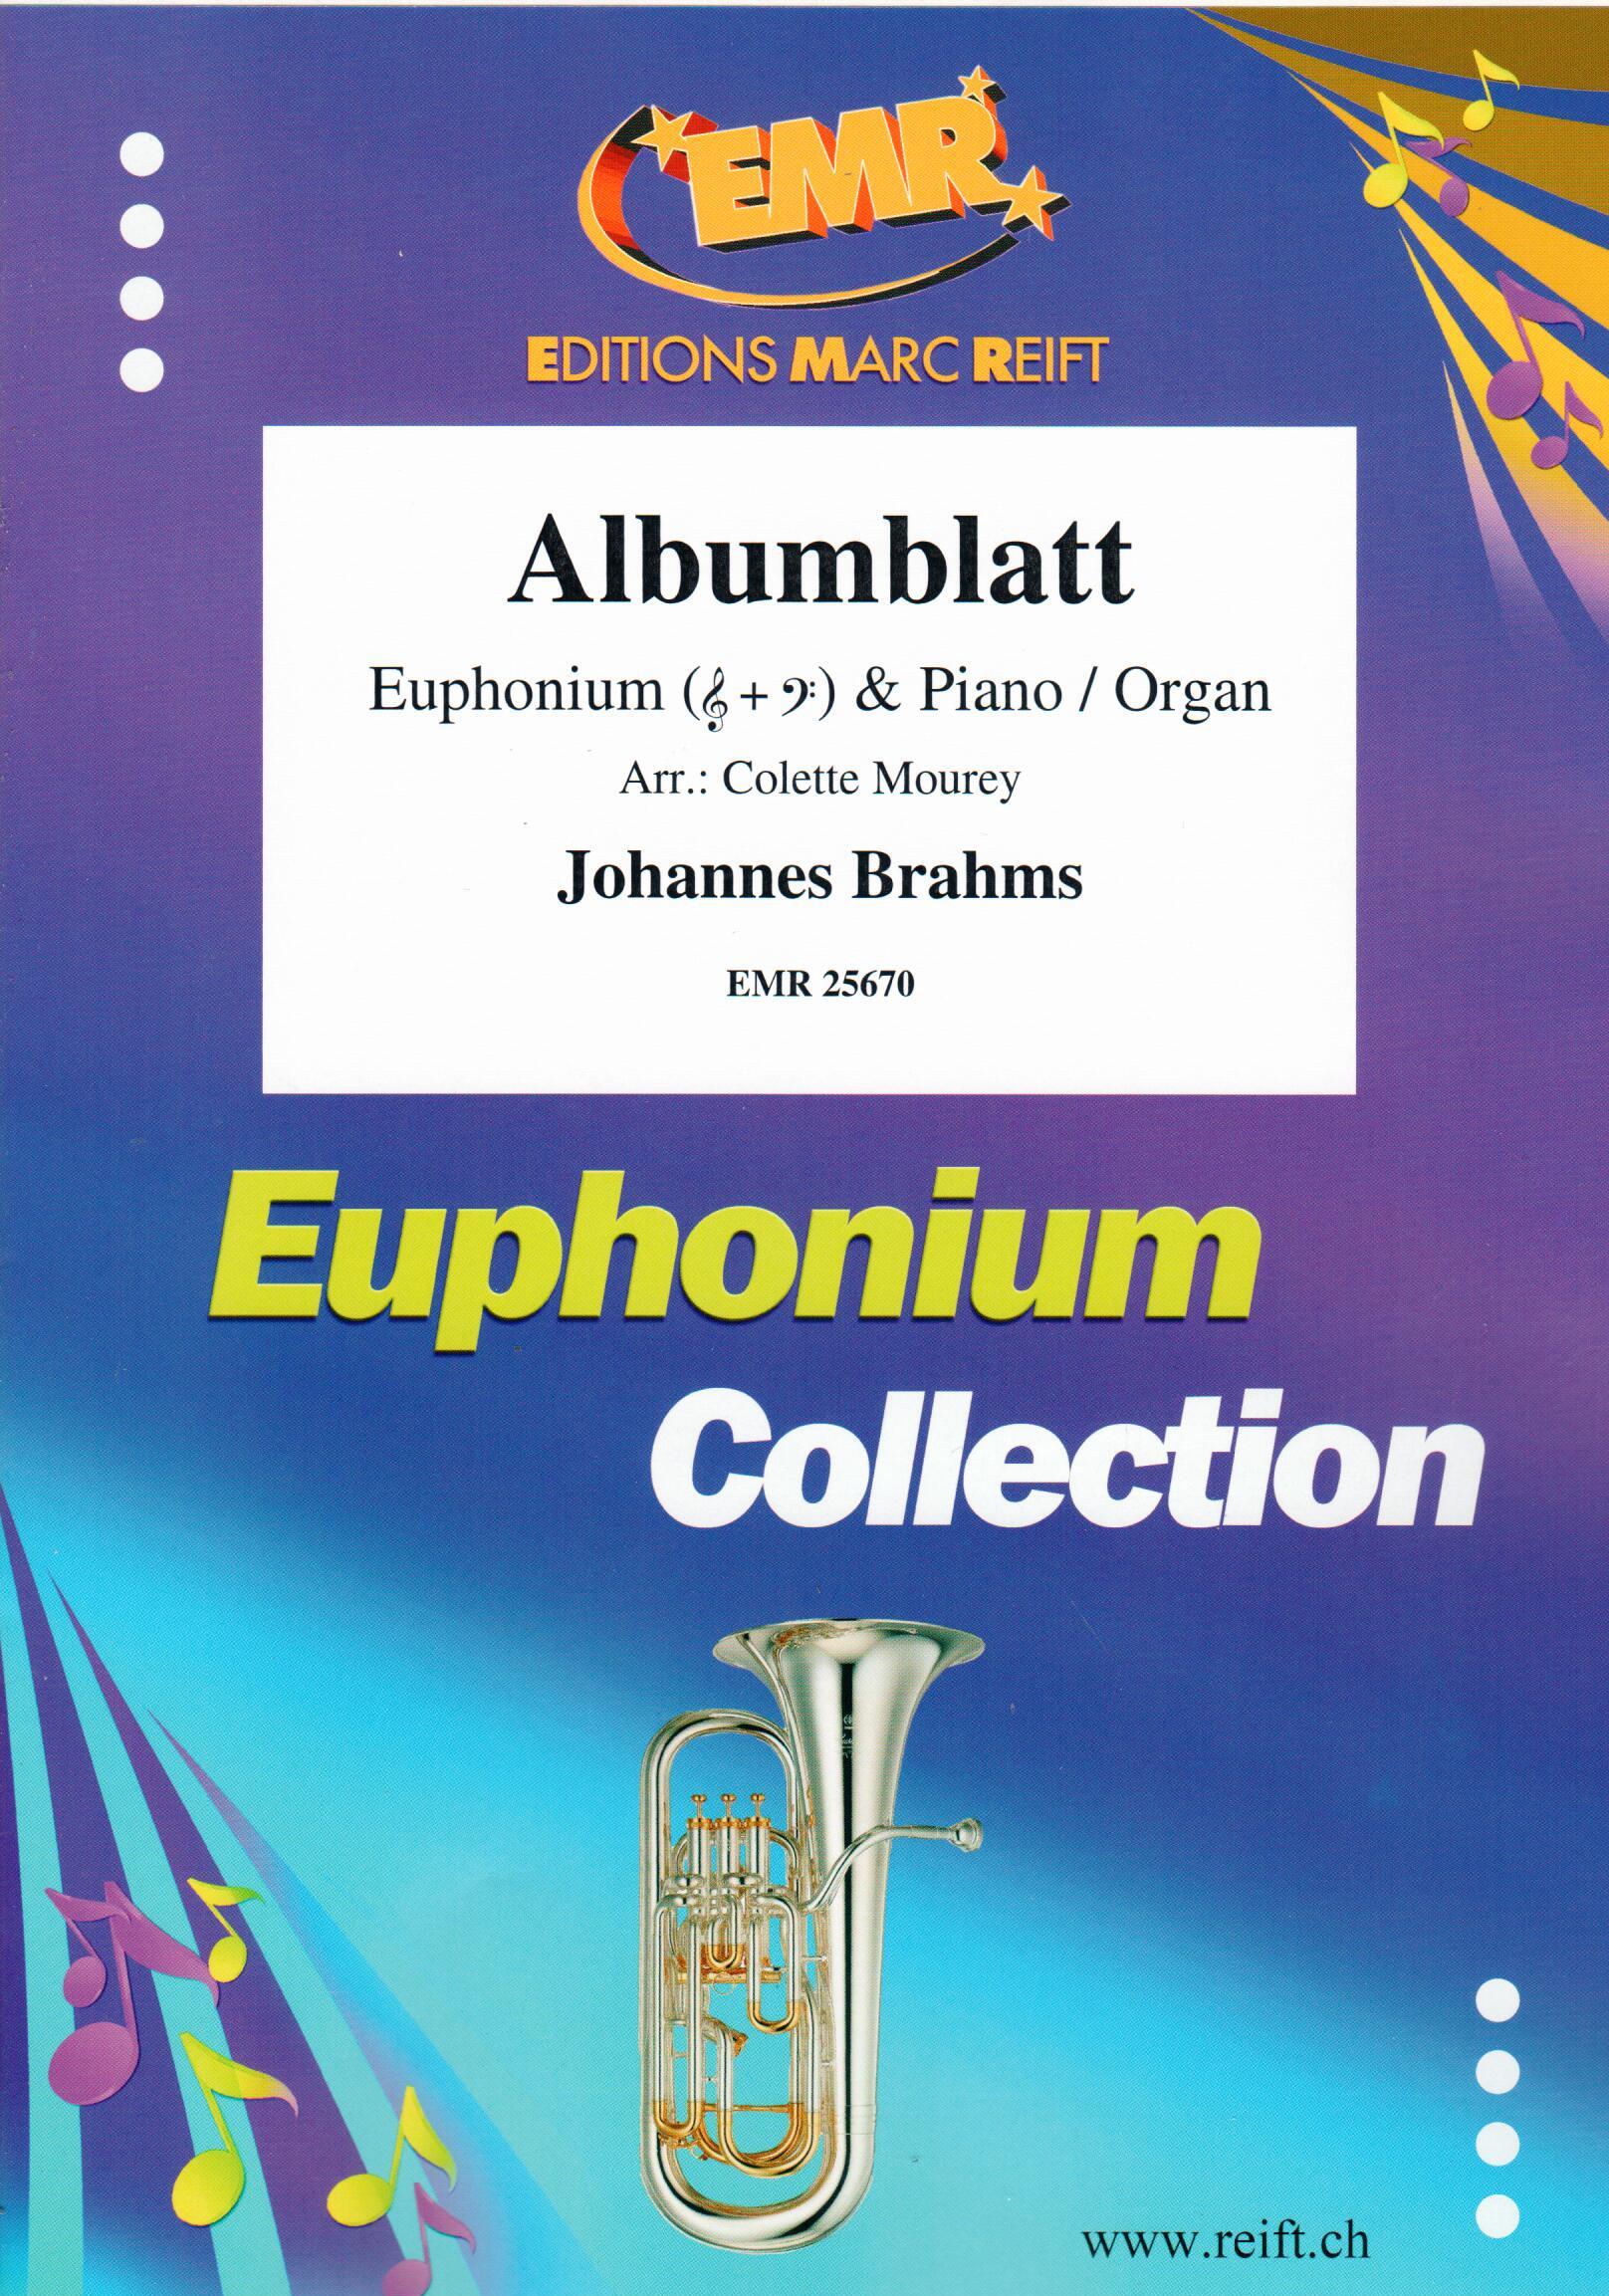 ALBUMBLATT, SOLOS - Euphonium